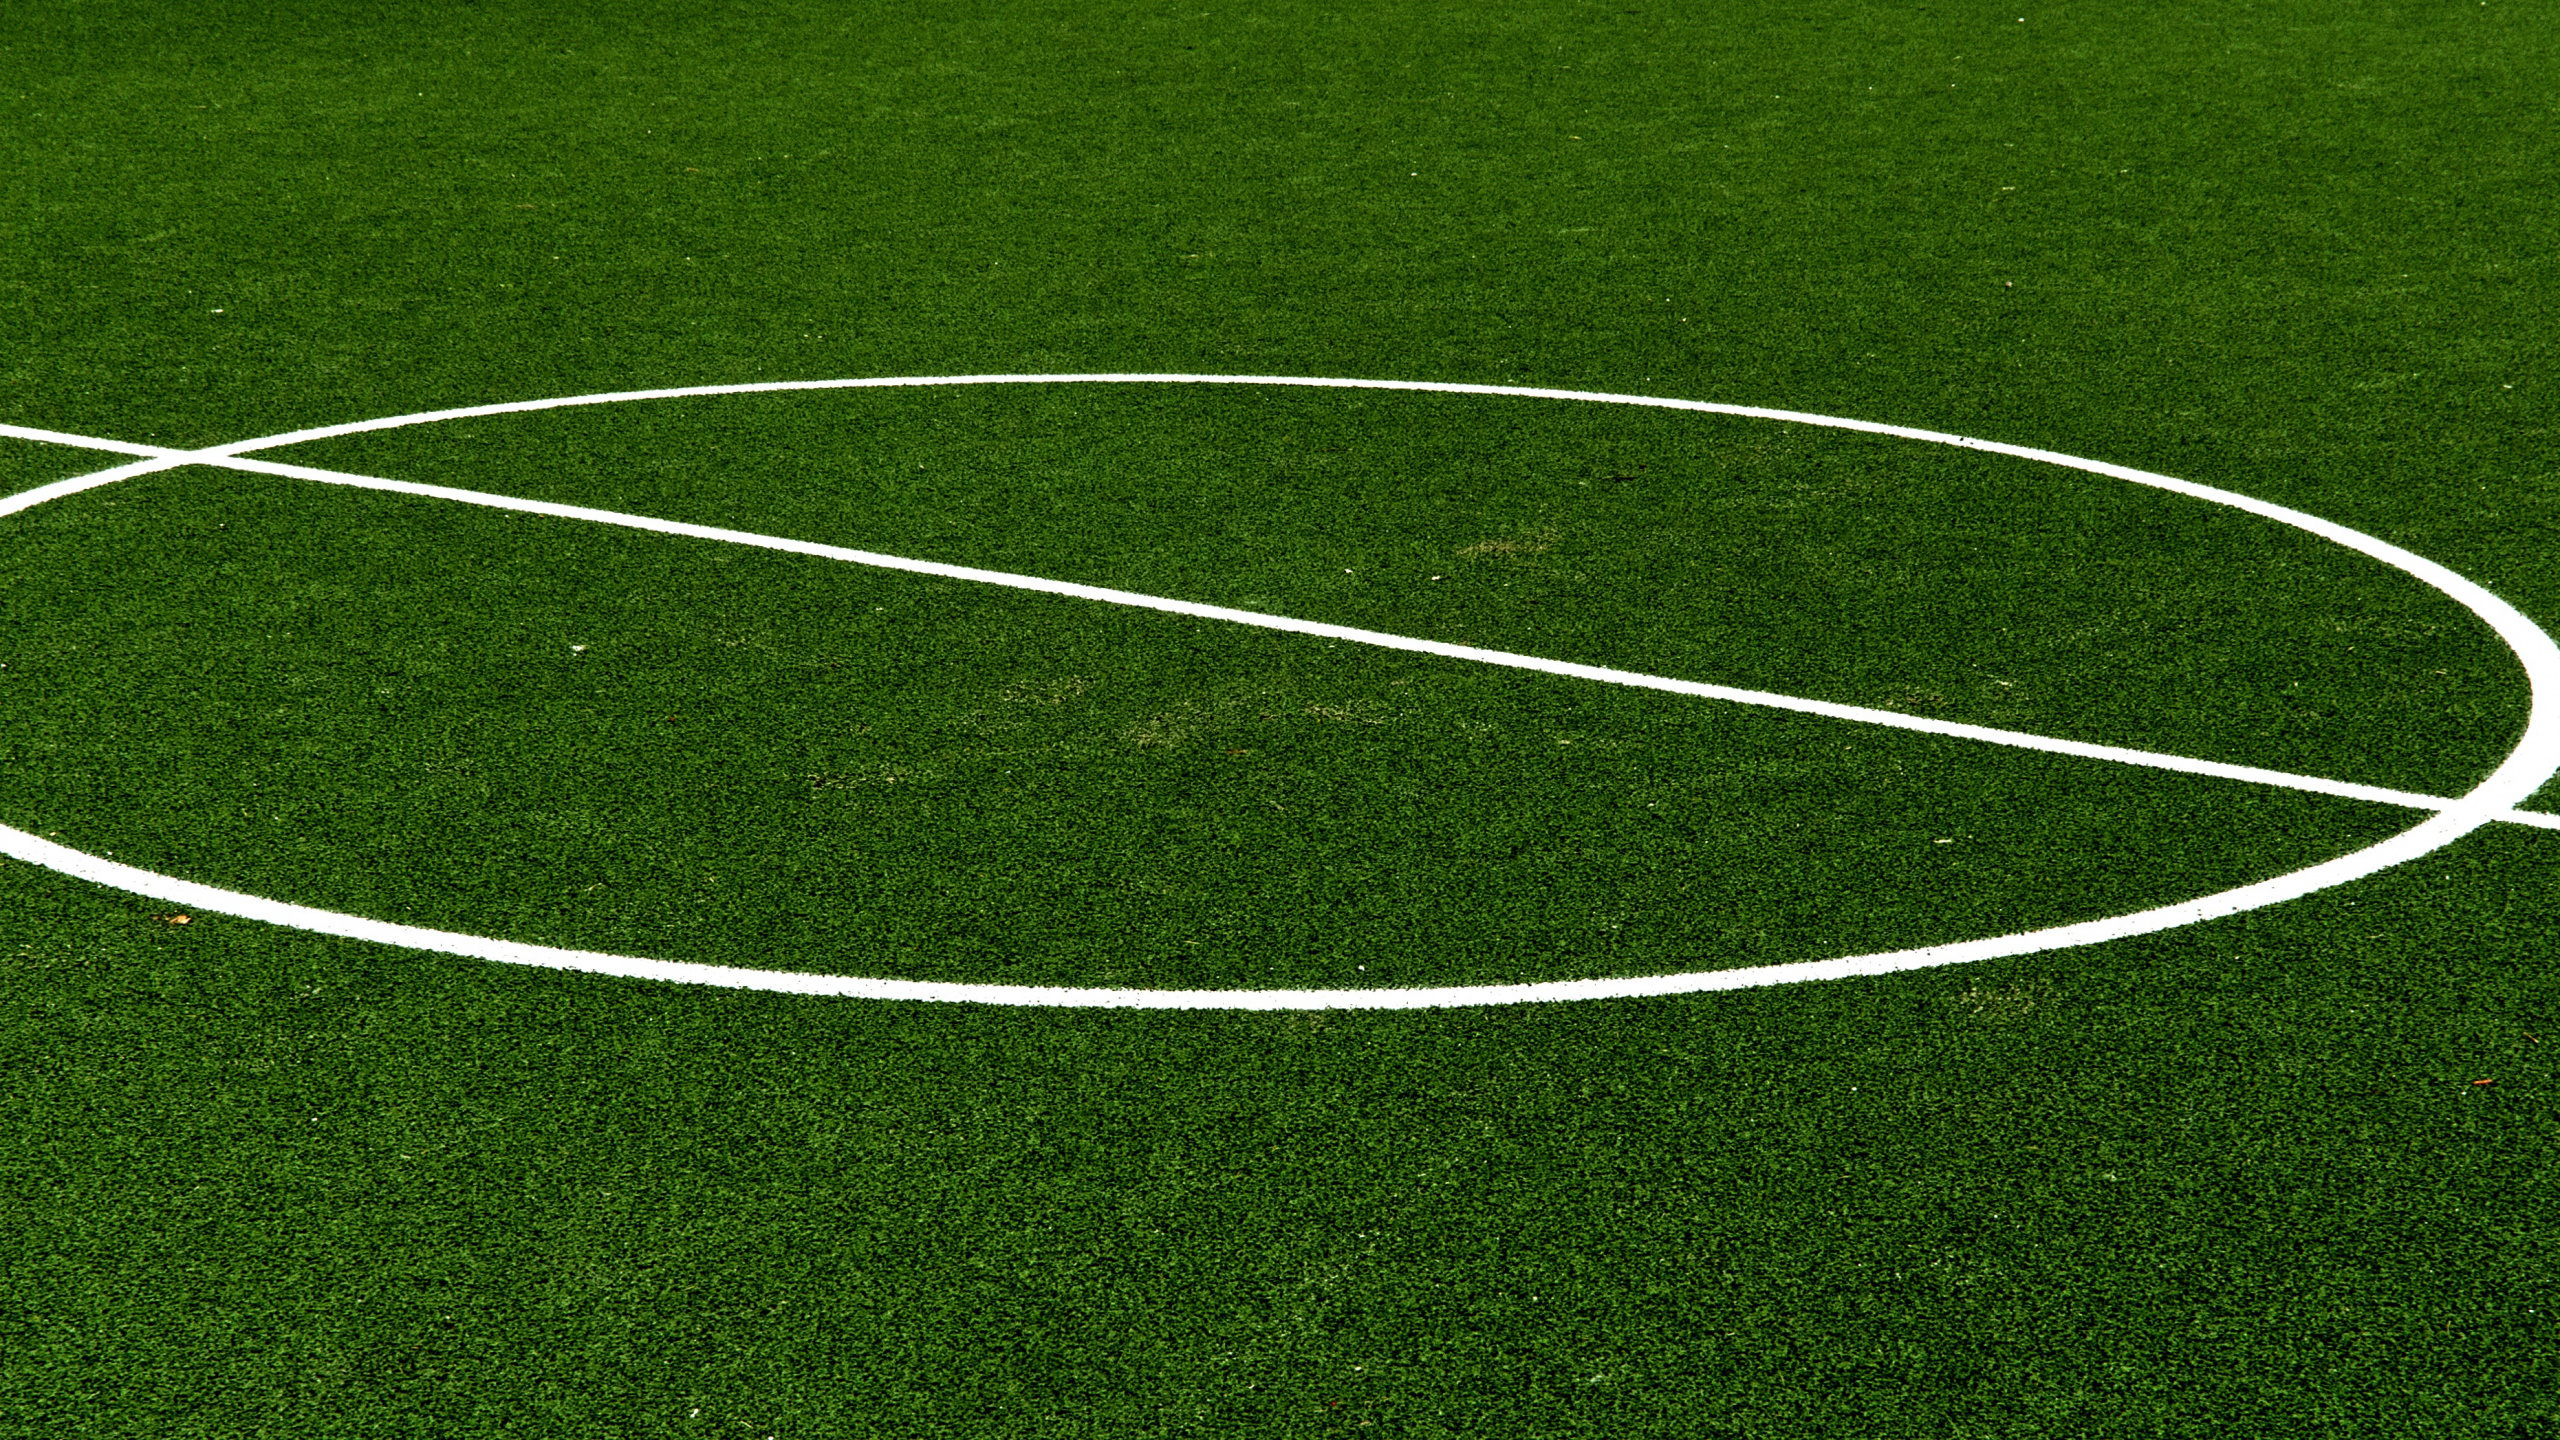 足球场, 团队运动, 运动场地, 草, 绿色的 壁纸 2560x1440 允许